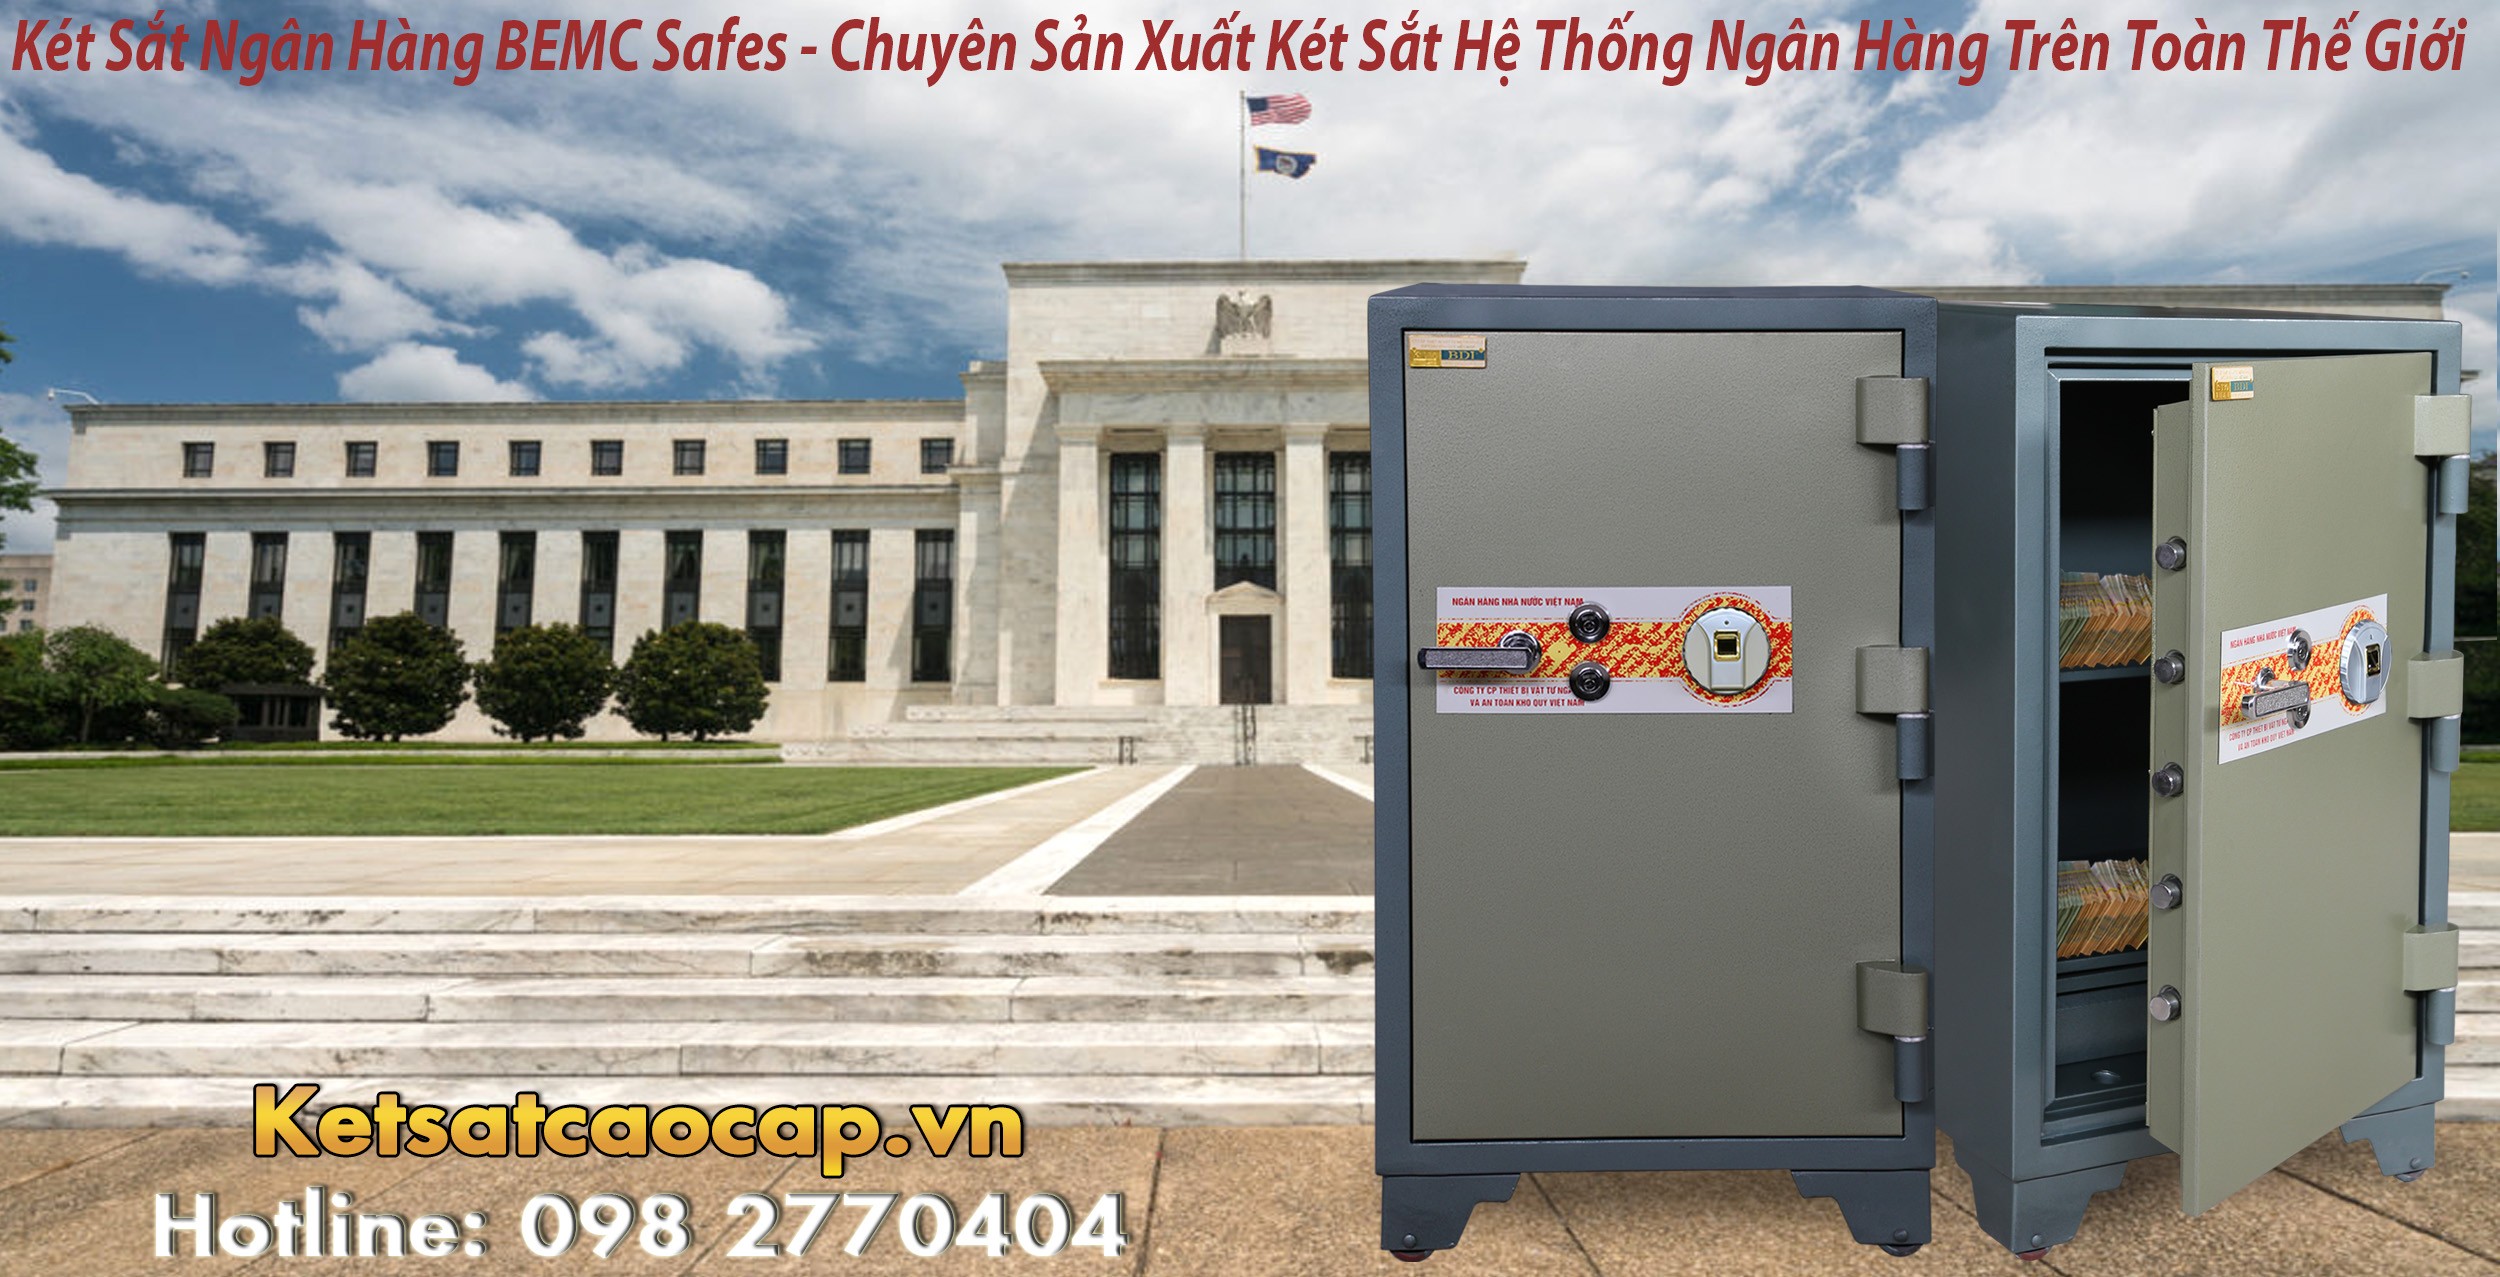 hình ảnh sản phẩm Két Sắt Vân Tay Bank Safes BEMC K130 F Két Sắt Công Nghệ Vân Tay VN